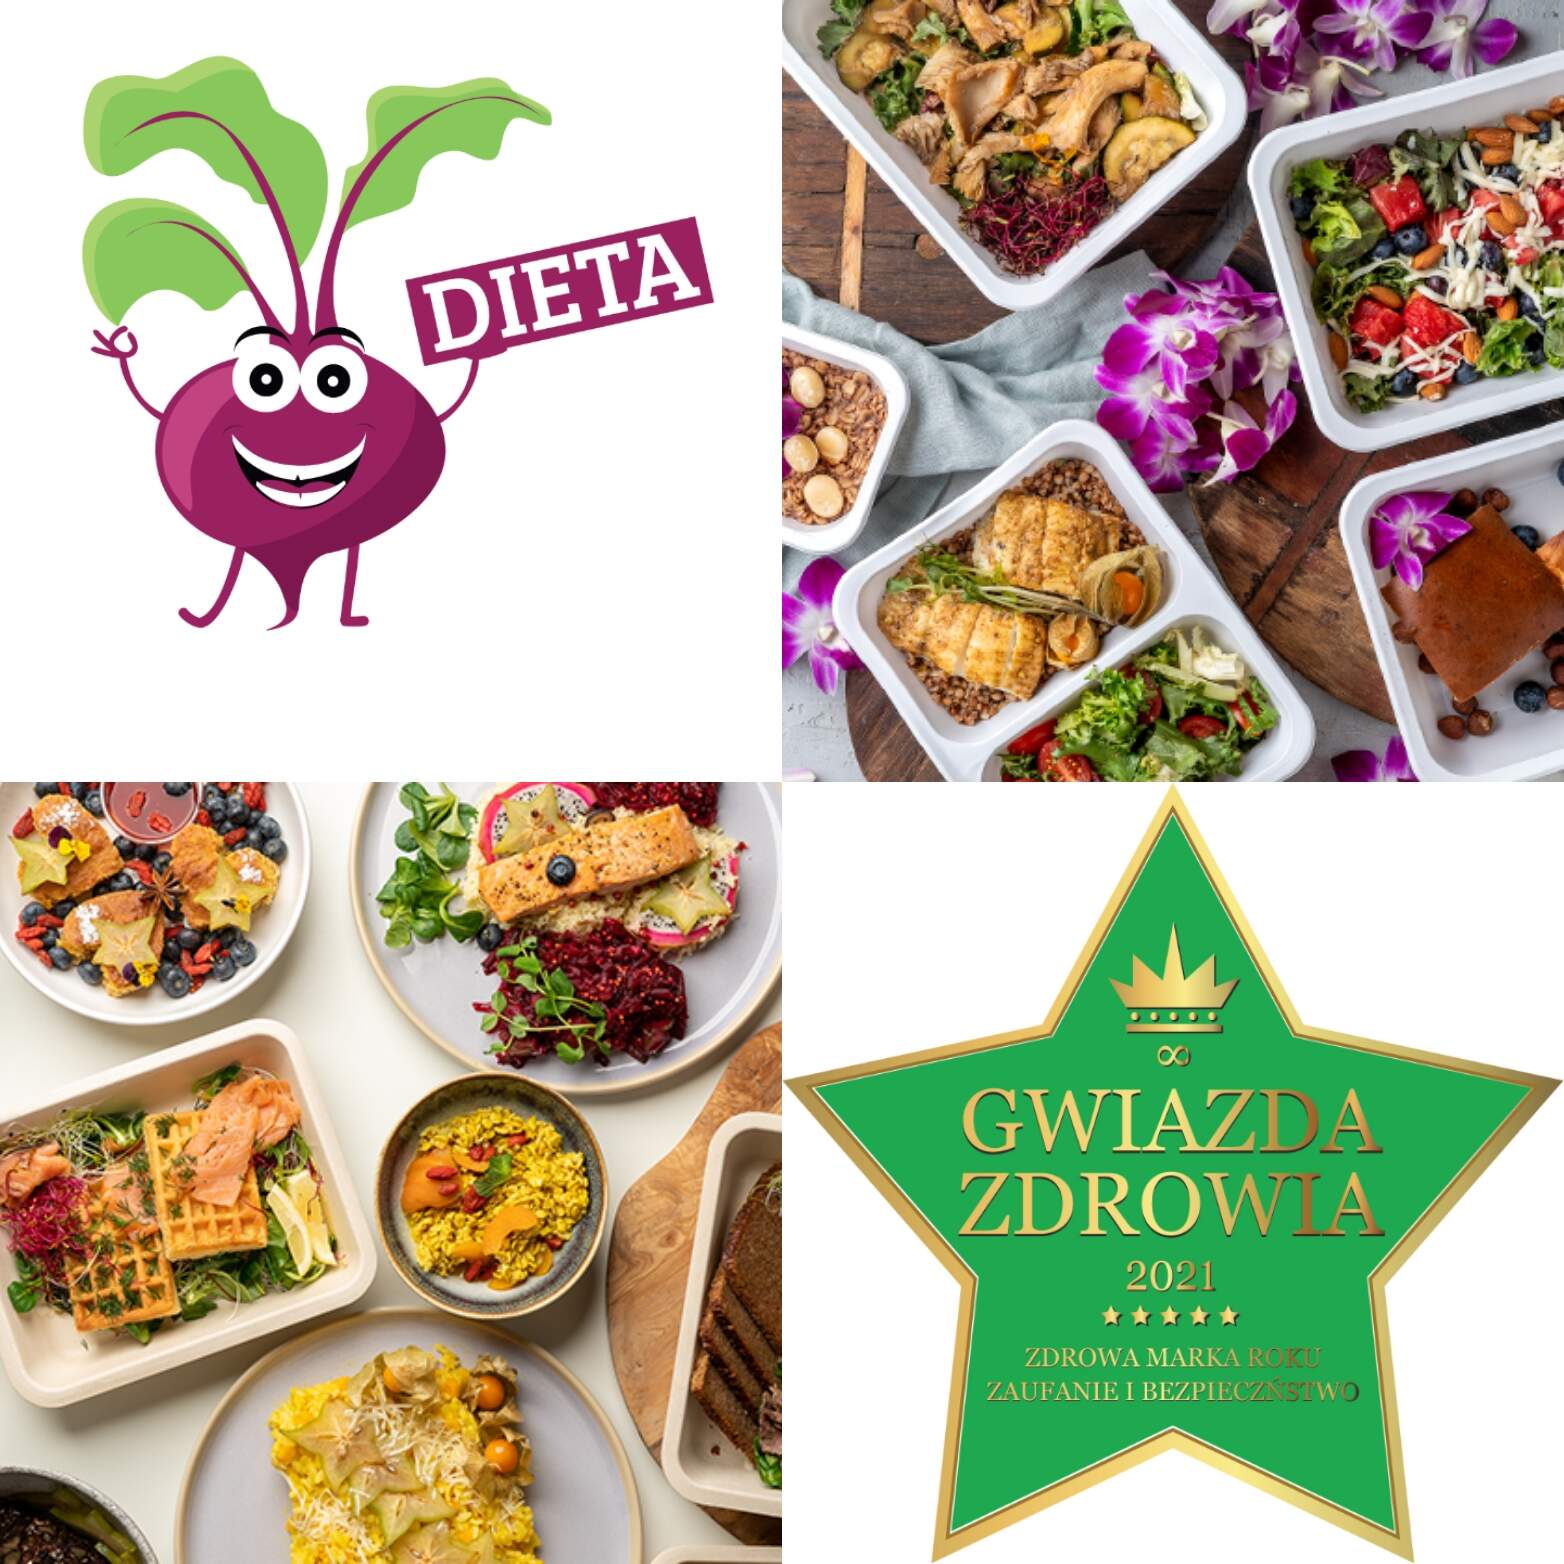 Otwórz się na zdrowie. Burak Dieta jednym z najchętniej wybieranych cateringów pudełkowych w Polsce!